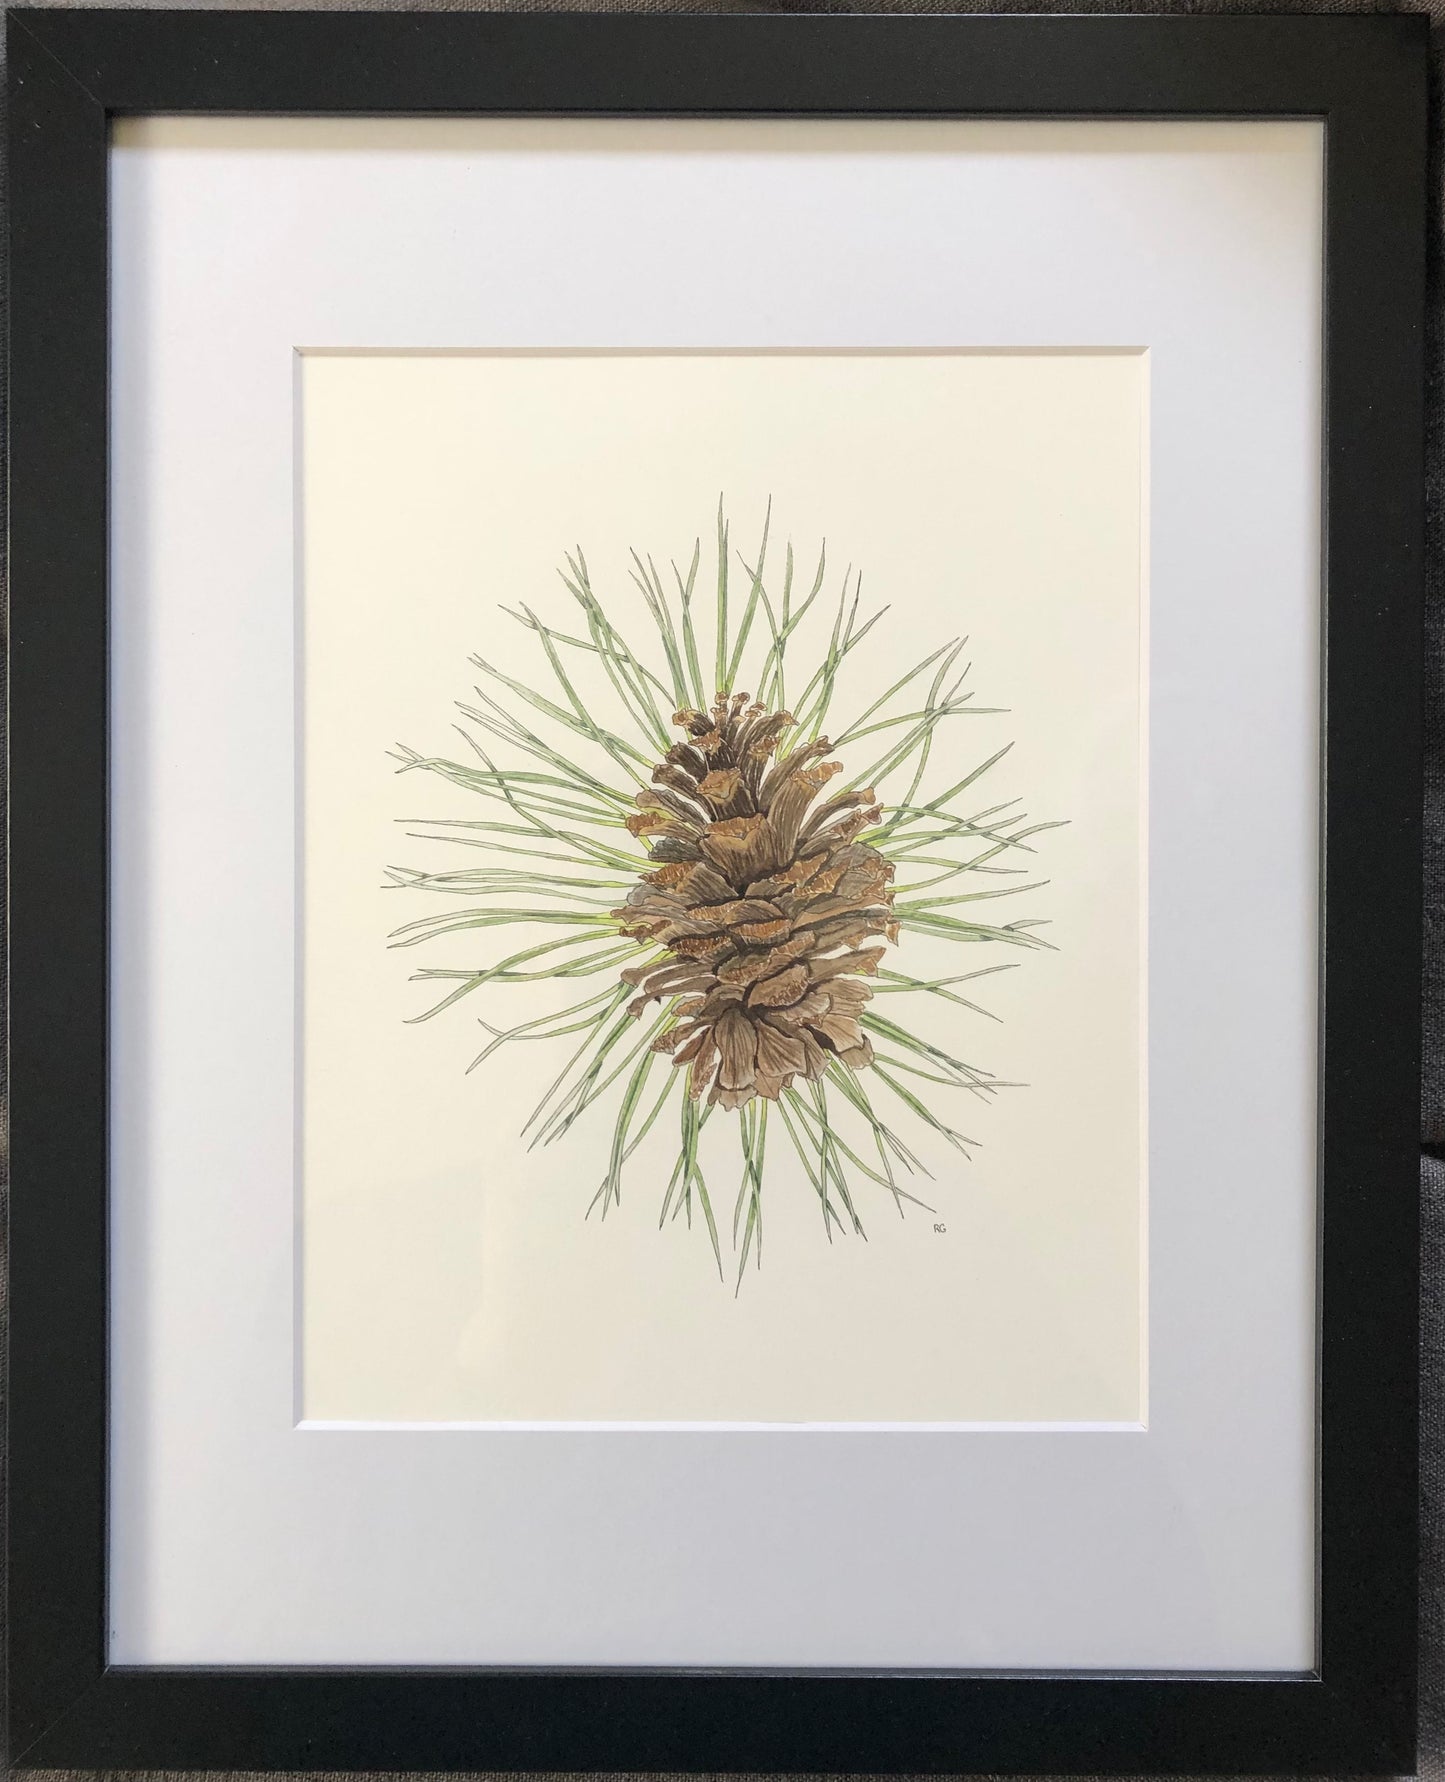 " Ponderosa Pine Cone and Needles "